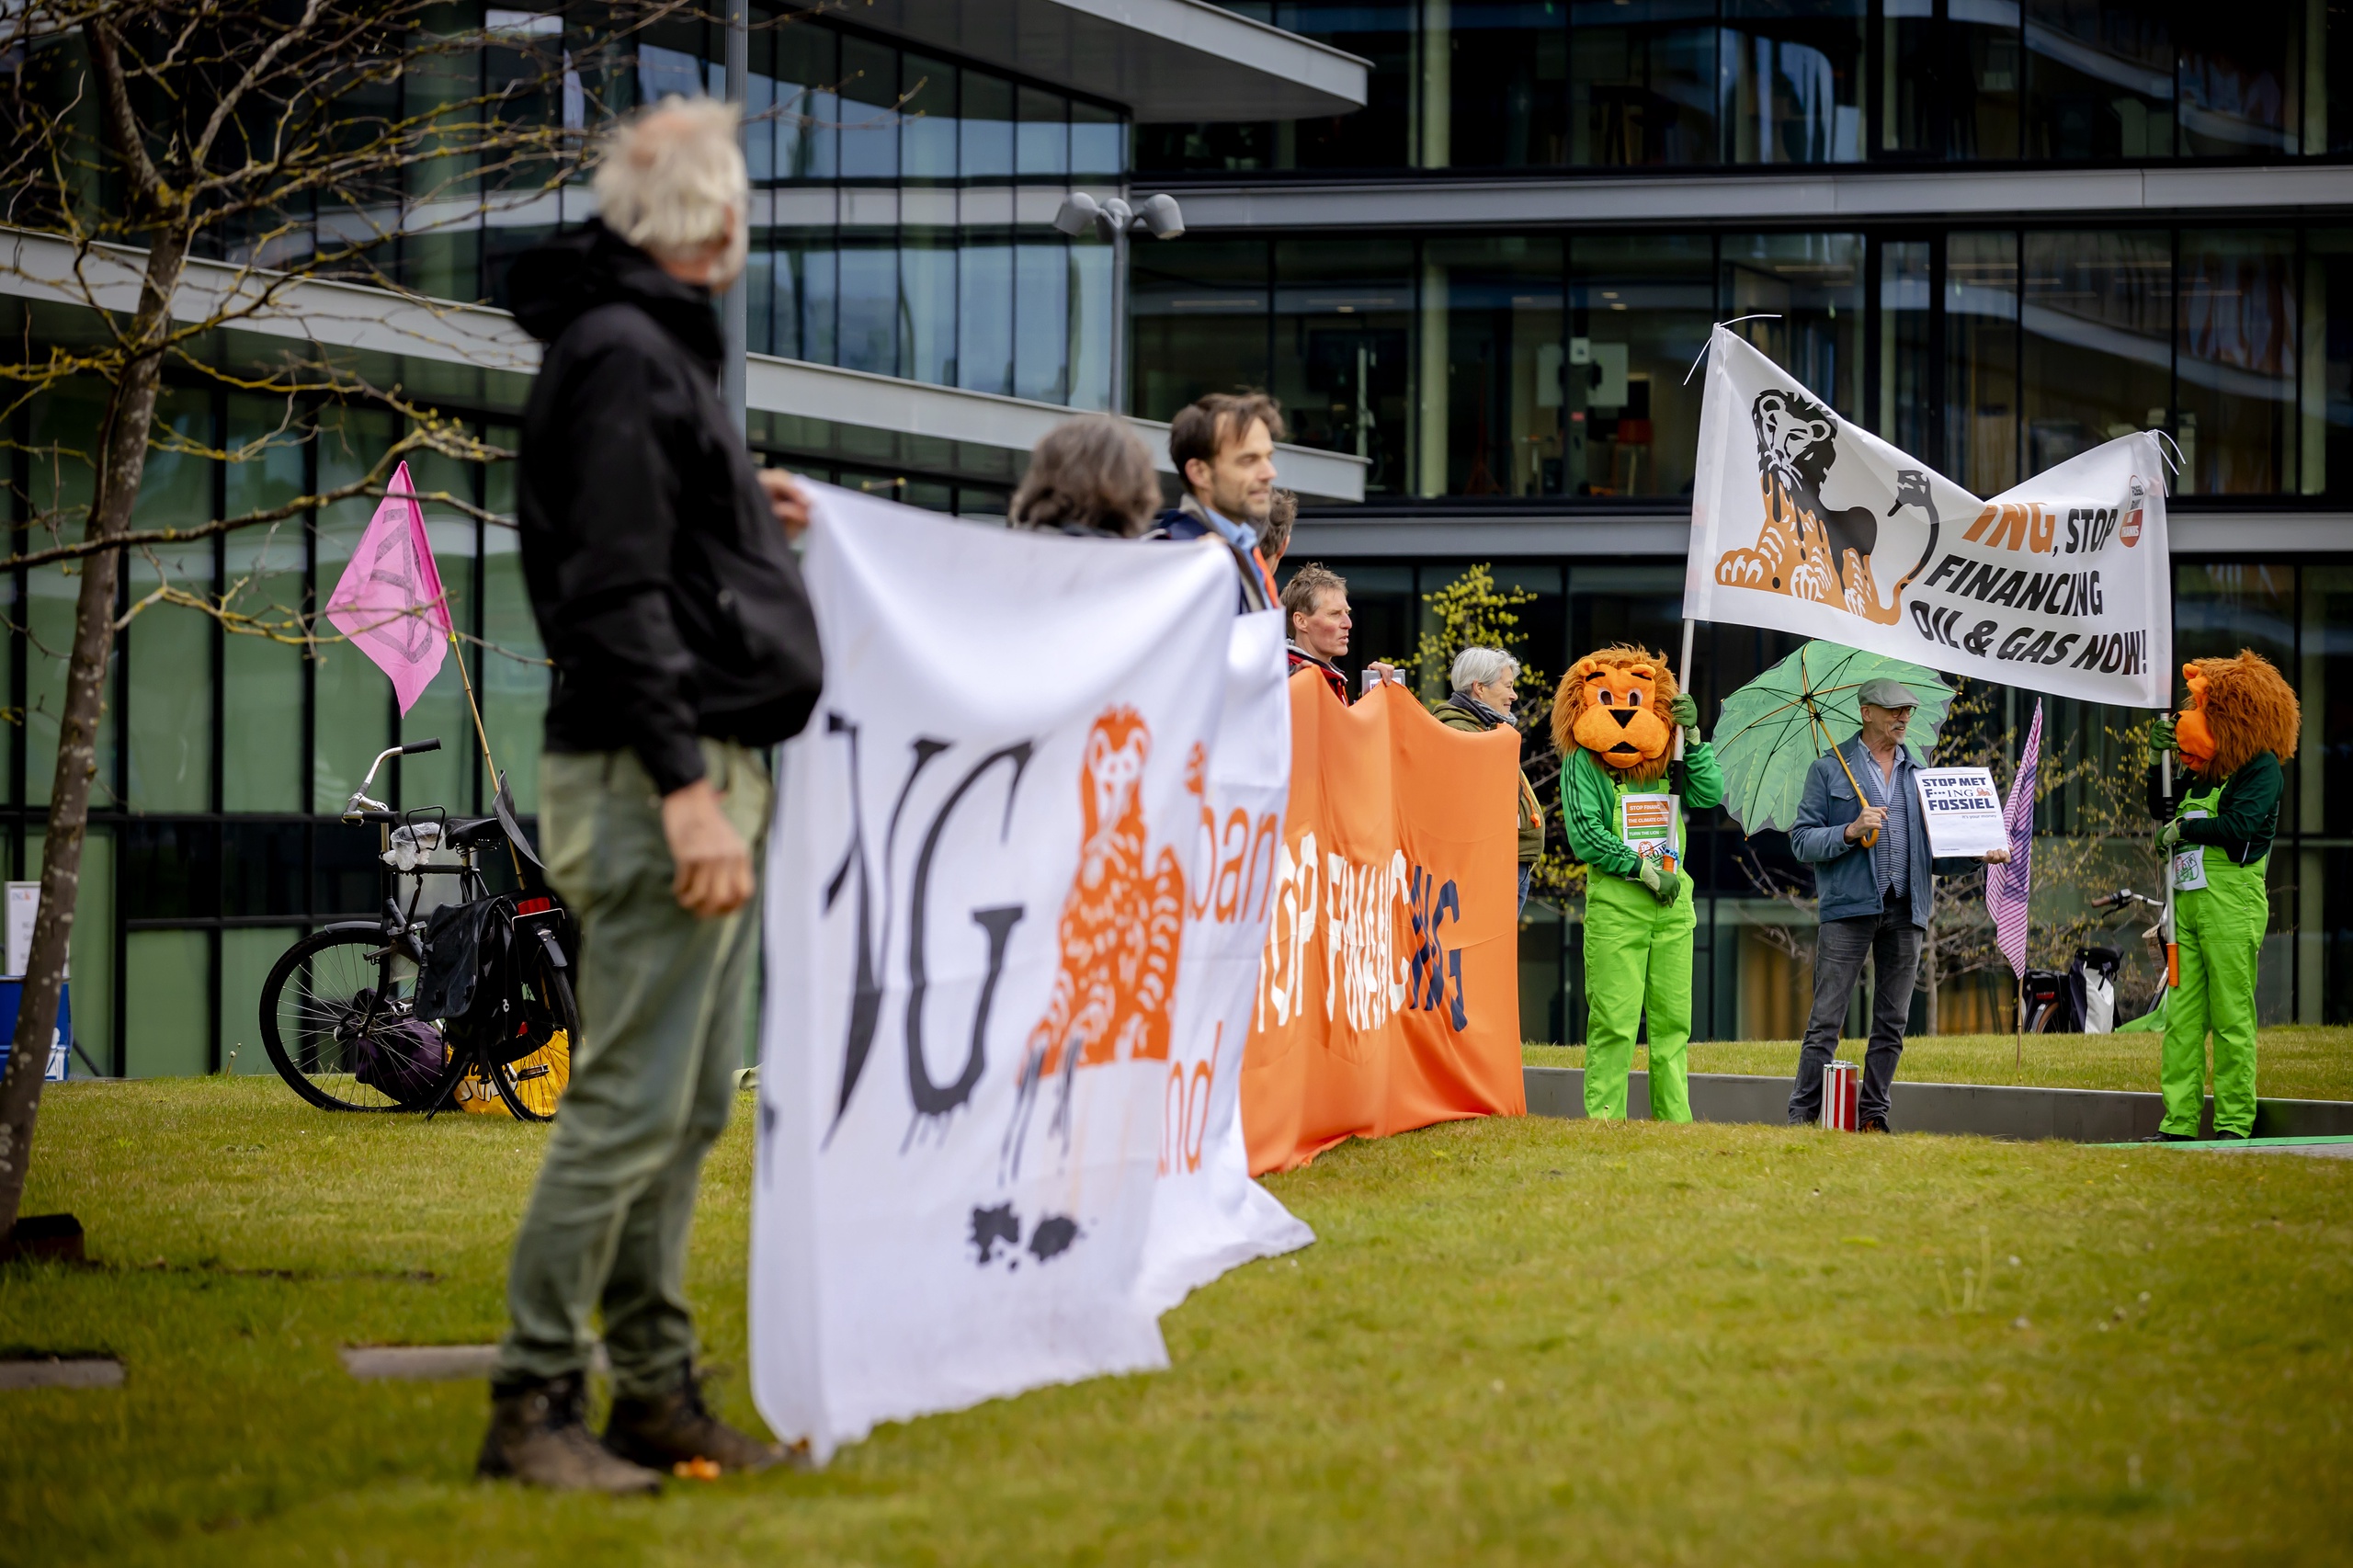 Een klimaatprotest bij ING. Nederlandse banken doen nog te weinig om klimaatdoelen te halen. Uit onderzoek van onderzoeksbureau Profundo blijkt namelijk dat Nederlandse financiële instellingen 244 ton CO2 per jaar uitstoten. 